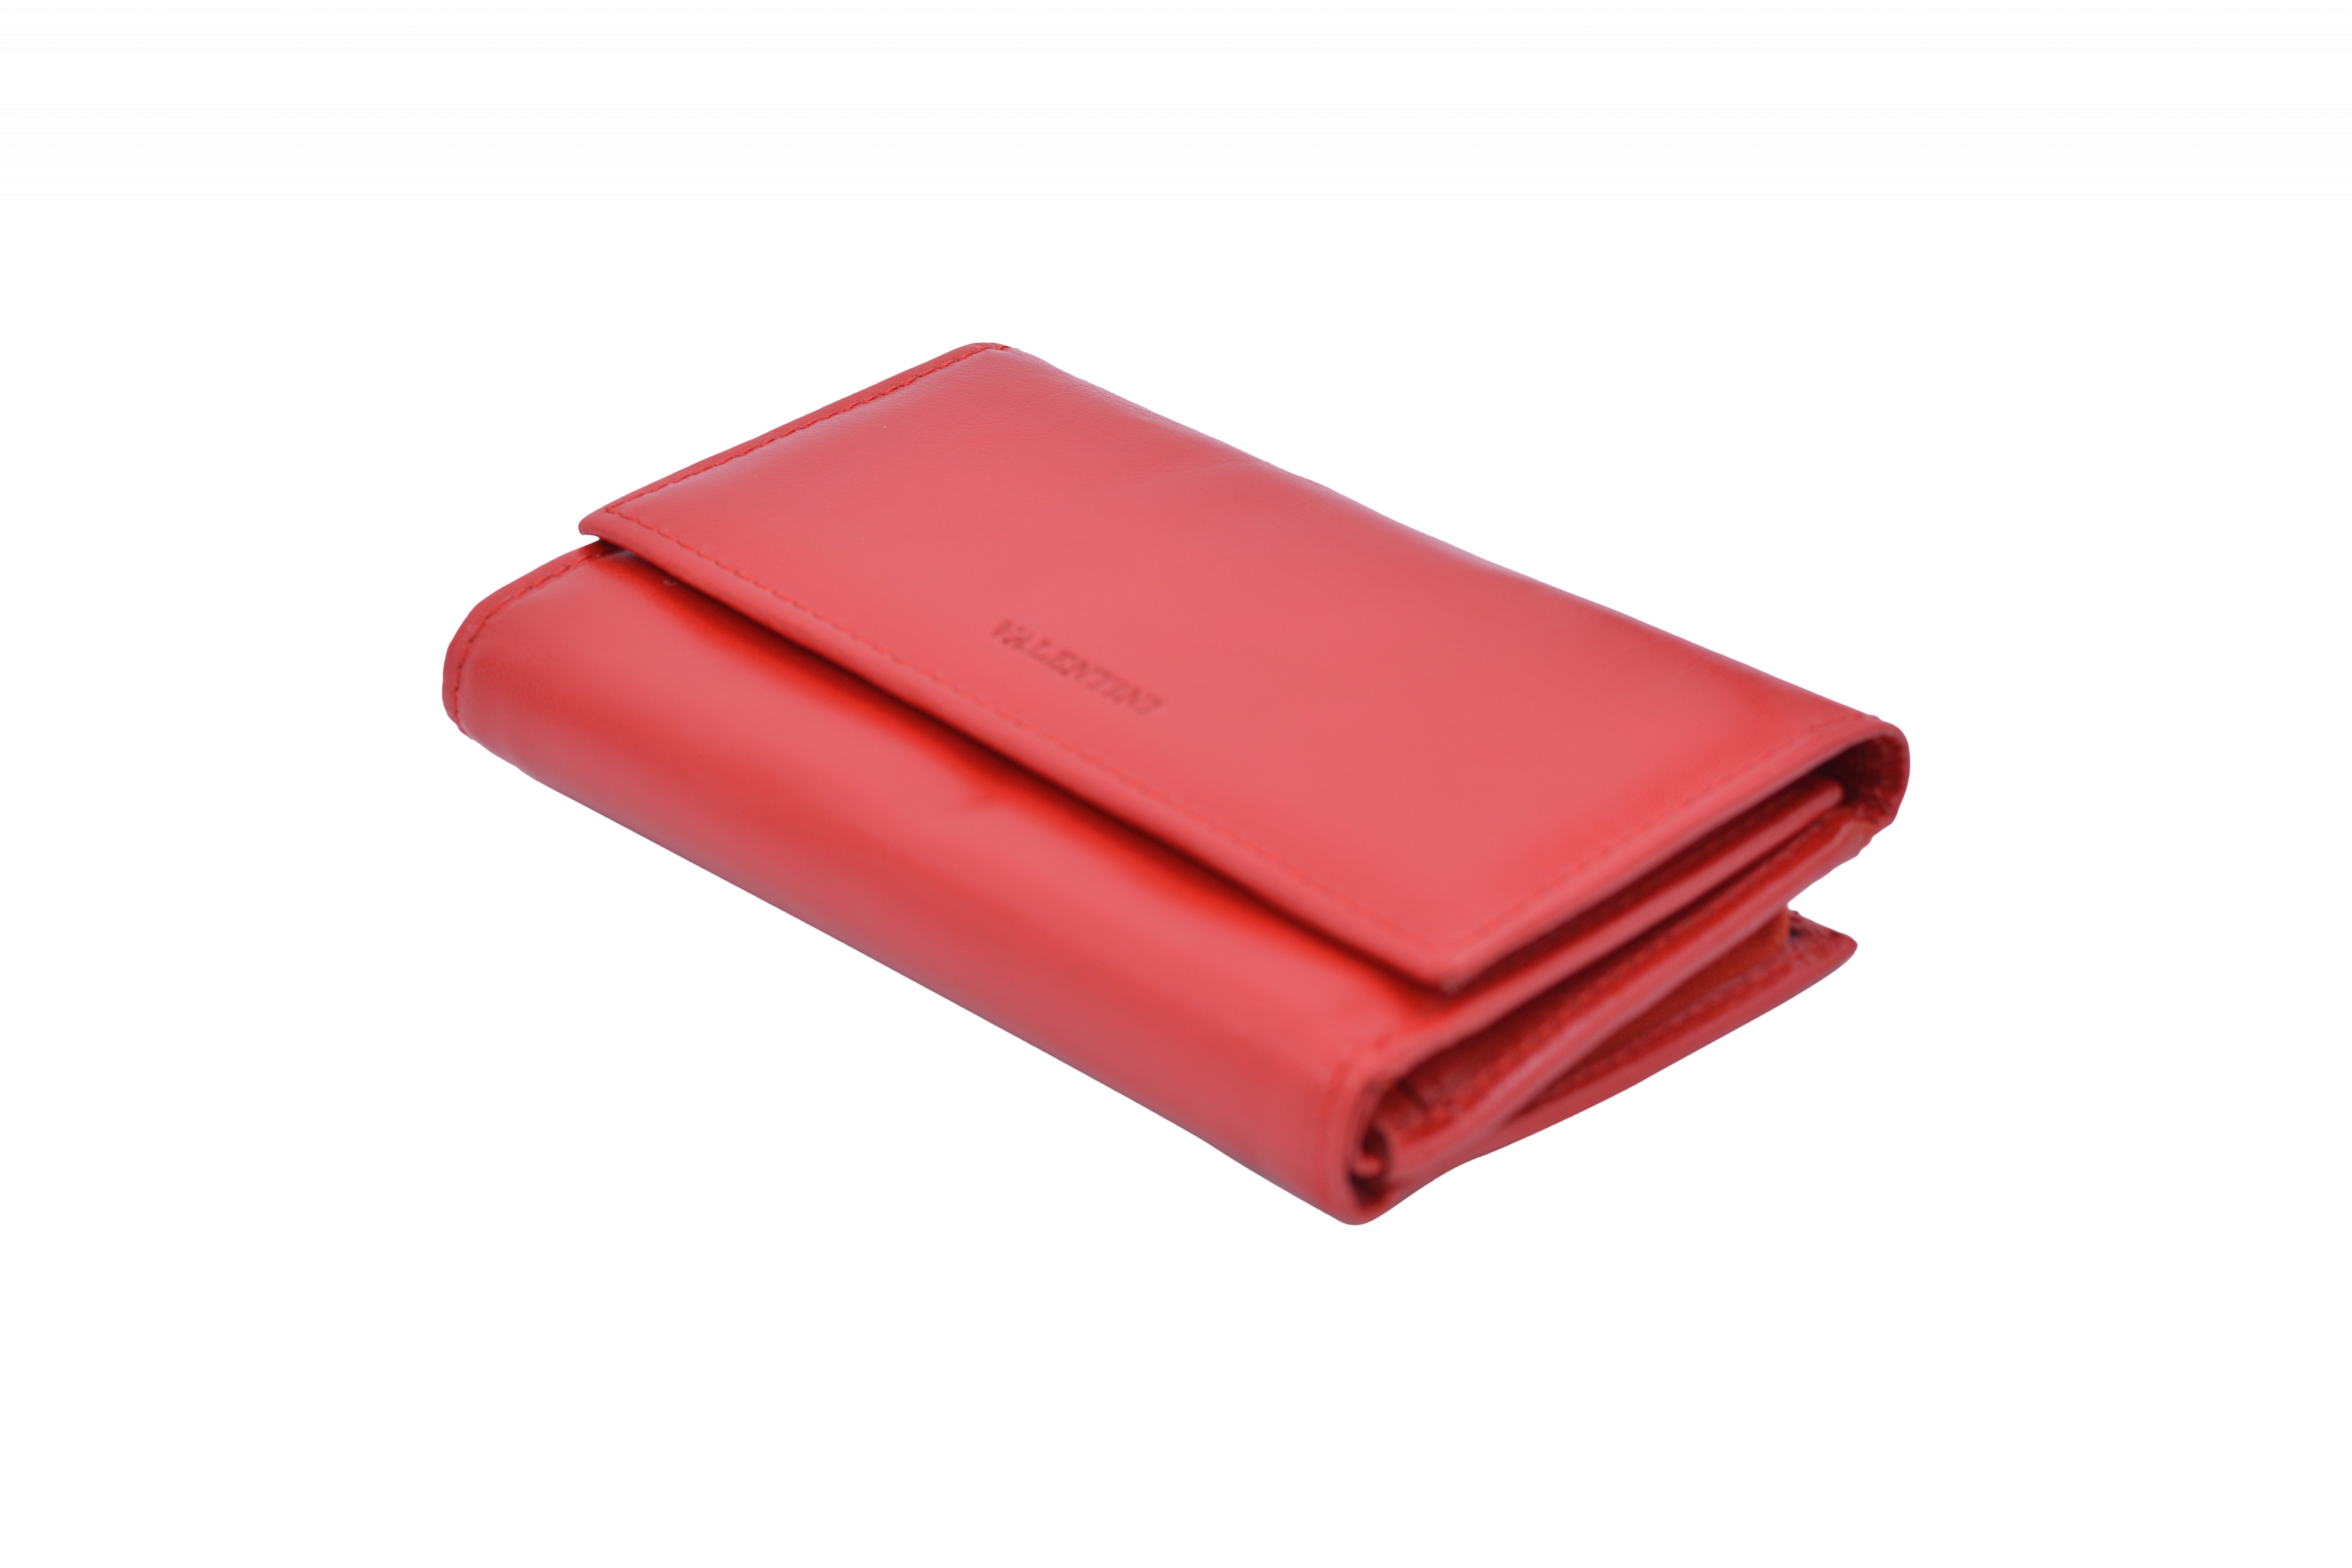 Dámská peněženka Červená, 15 x 4 x 9 (SV00-A306P074-00KUZ)